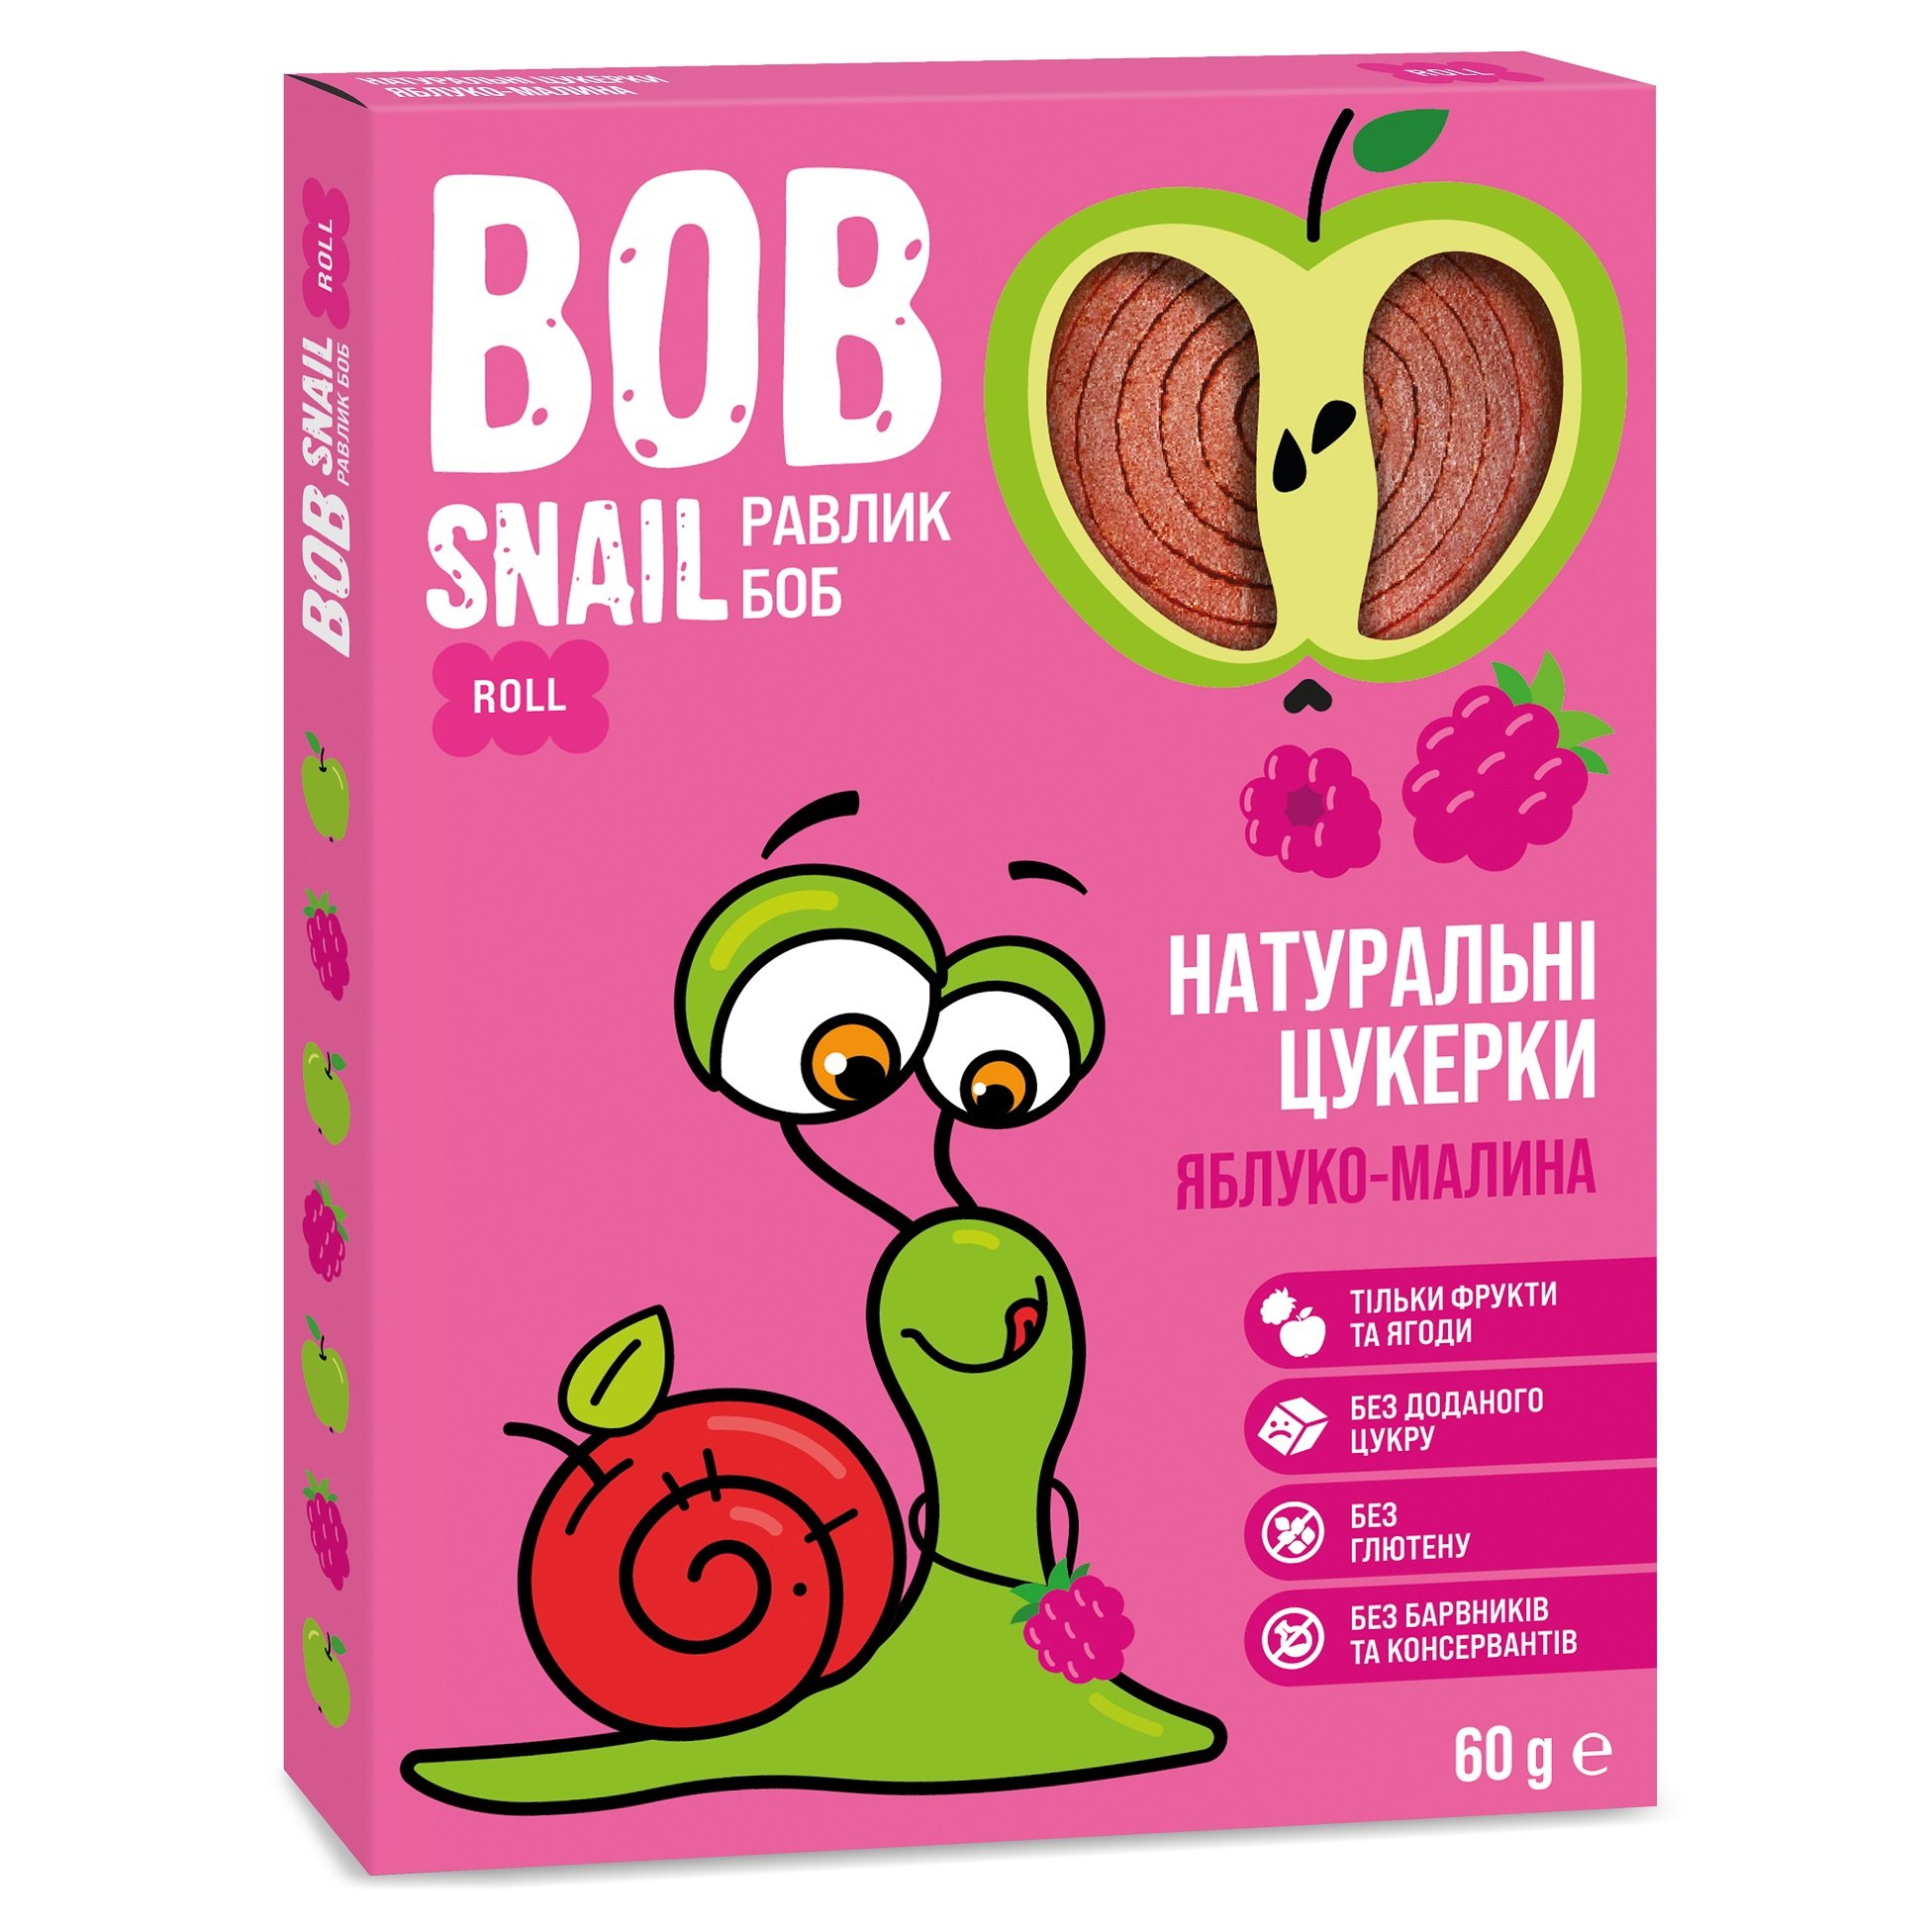 Натуральні цукерки Bob Snail Равлик Боб Яблуко та Малина, 60 г - фото 1